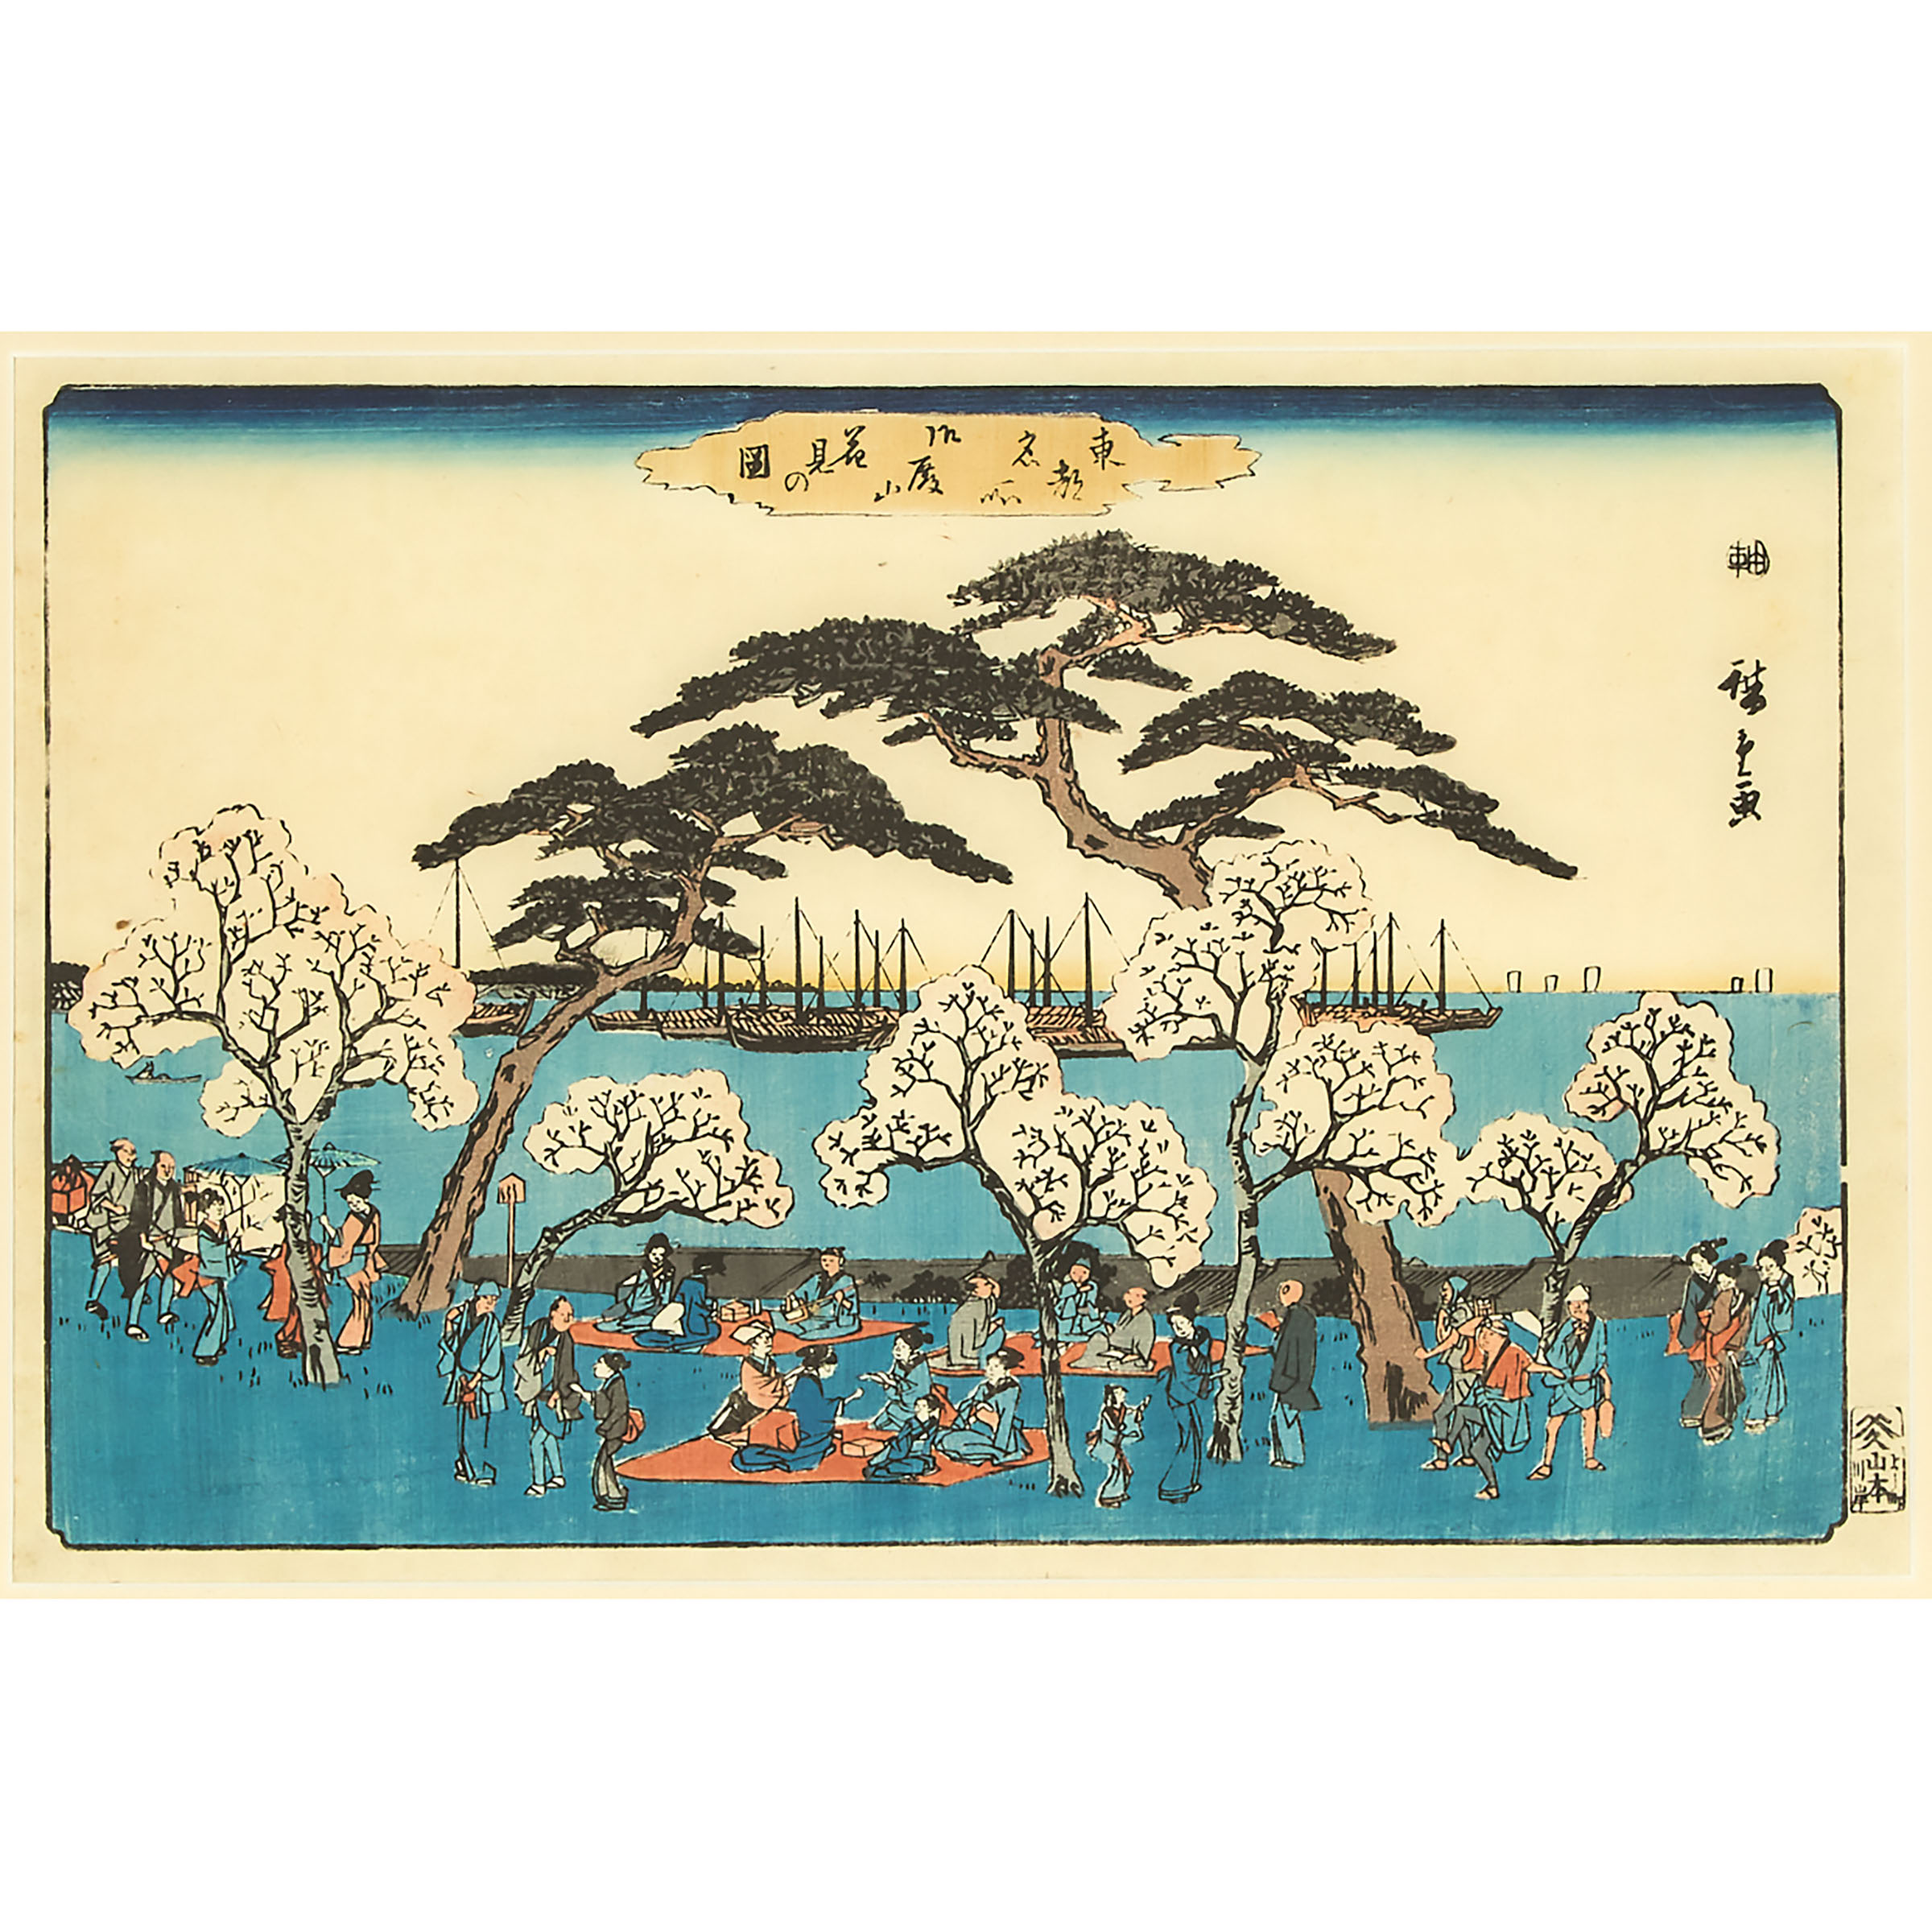 Utagawa Hiroshige (1797-1858), Yoshiwara, Fujieda, and Goten-yama, Edo Period, 19th Century